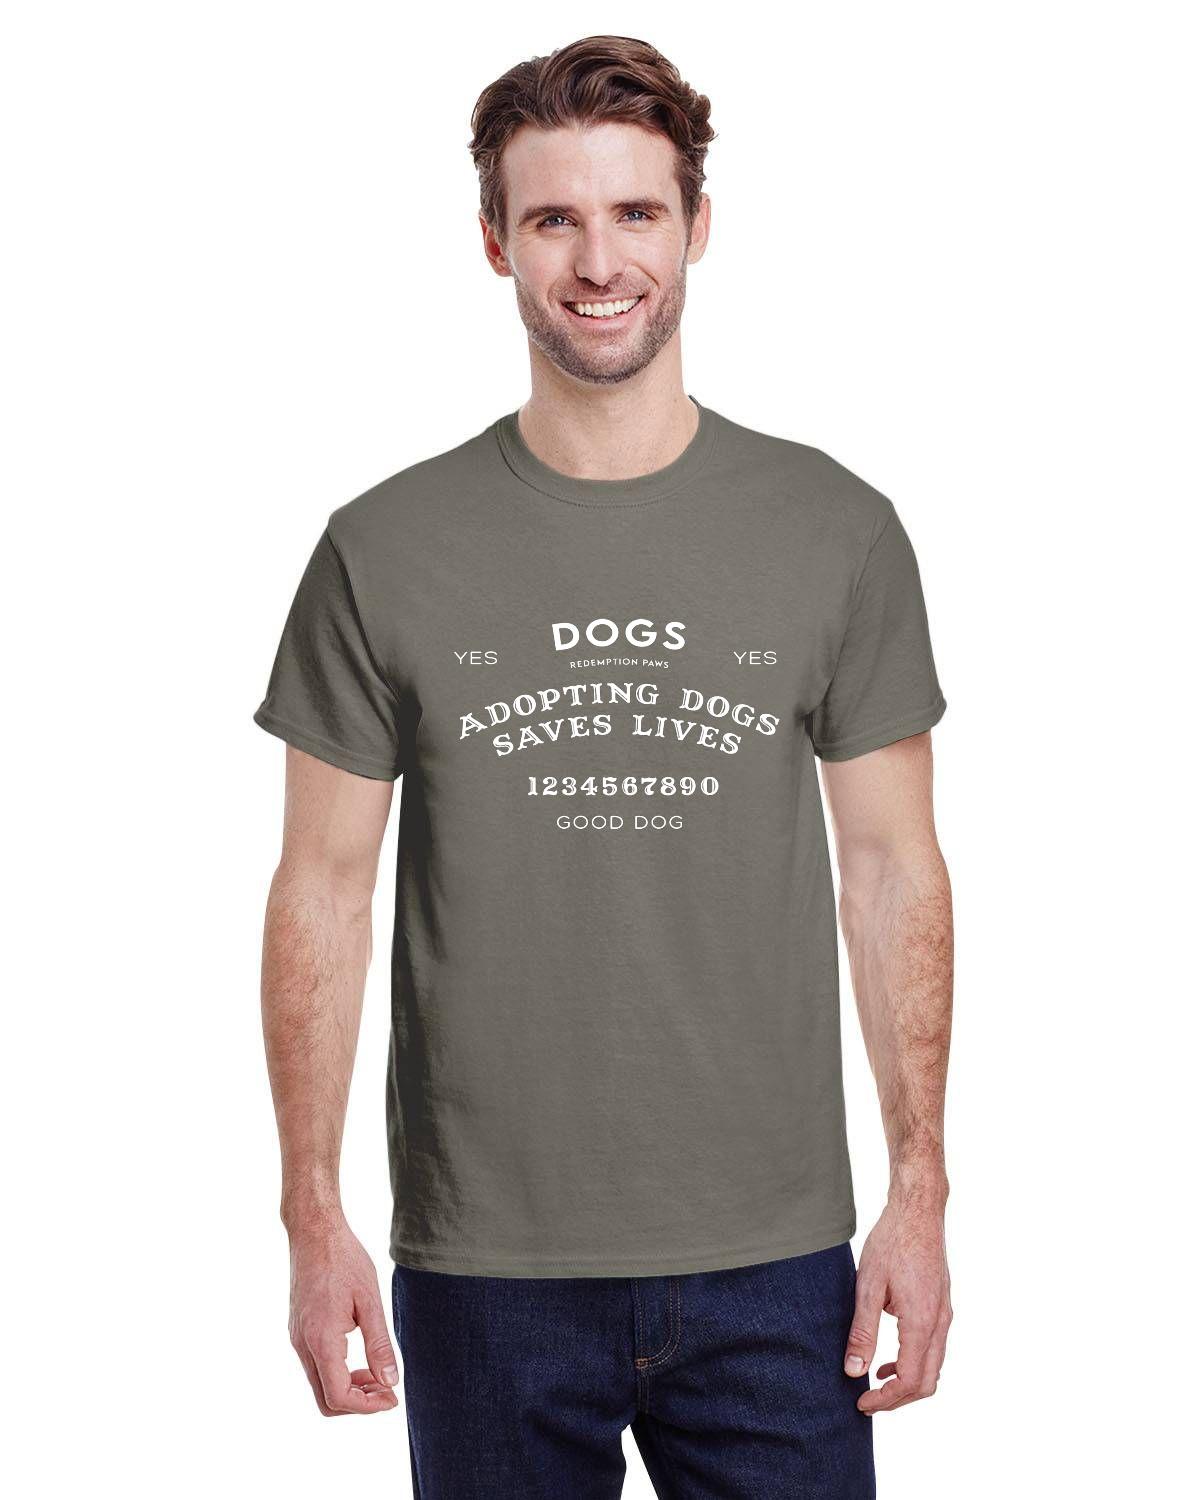 Adopting Dogs Saves Lives Ouija T-shirt